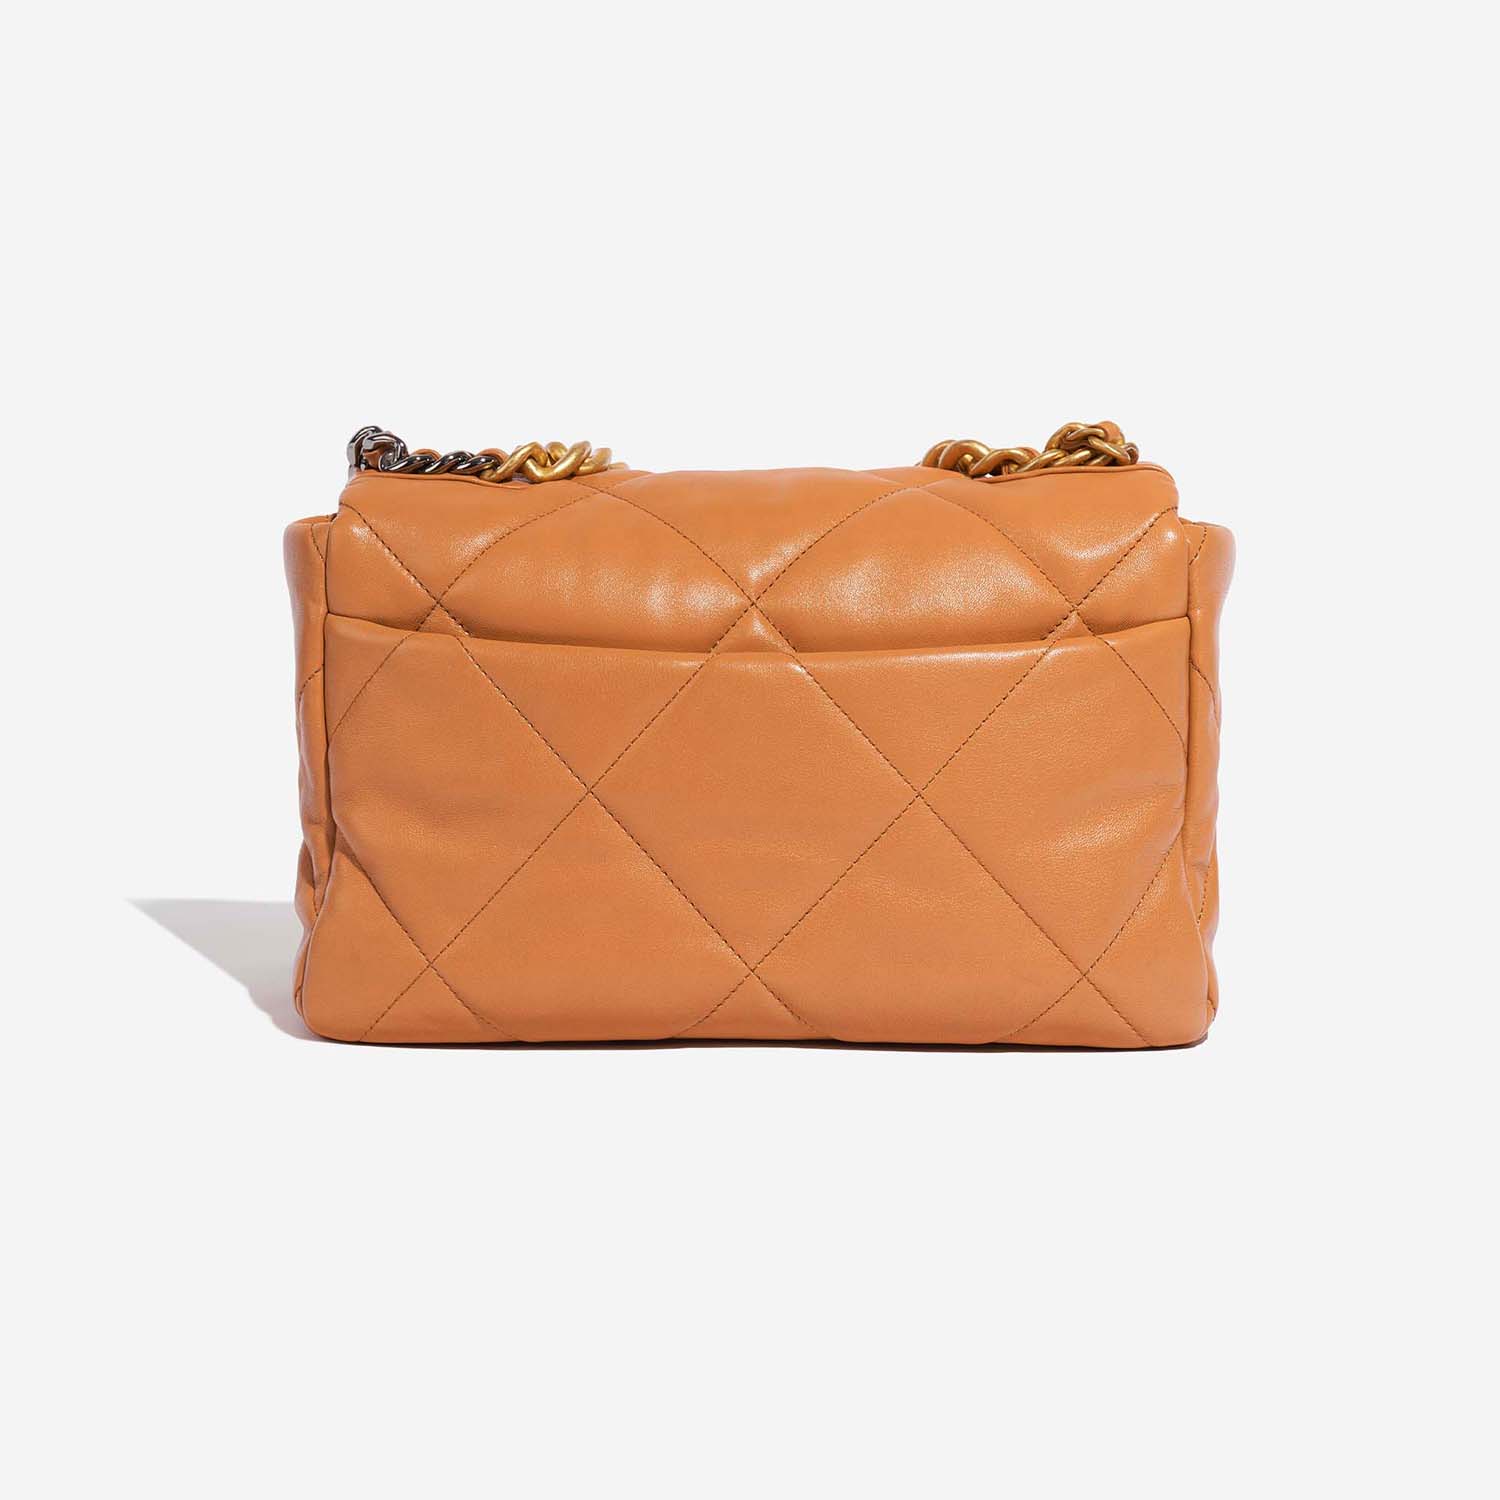 Chanel 19 Large Flap Bag Cognac Back | Verkaufen Sie Ihre Designer-Tasche auf Saclab.com